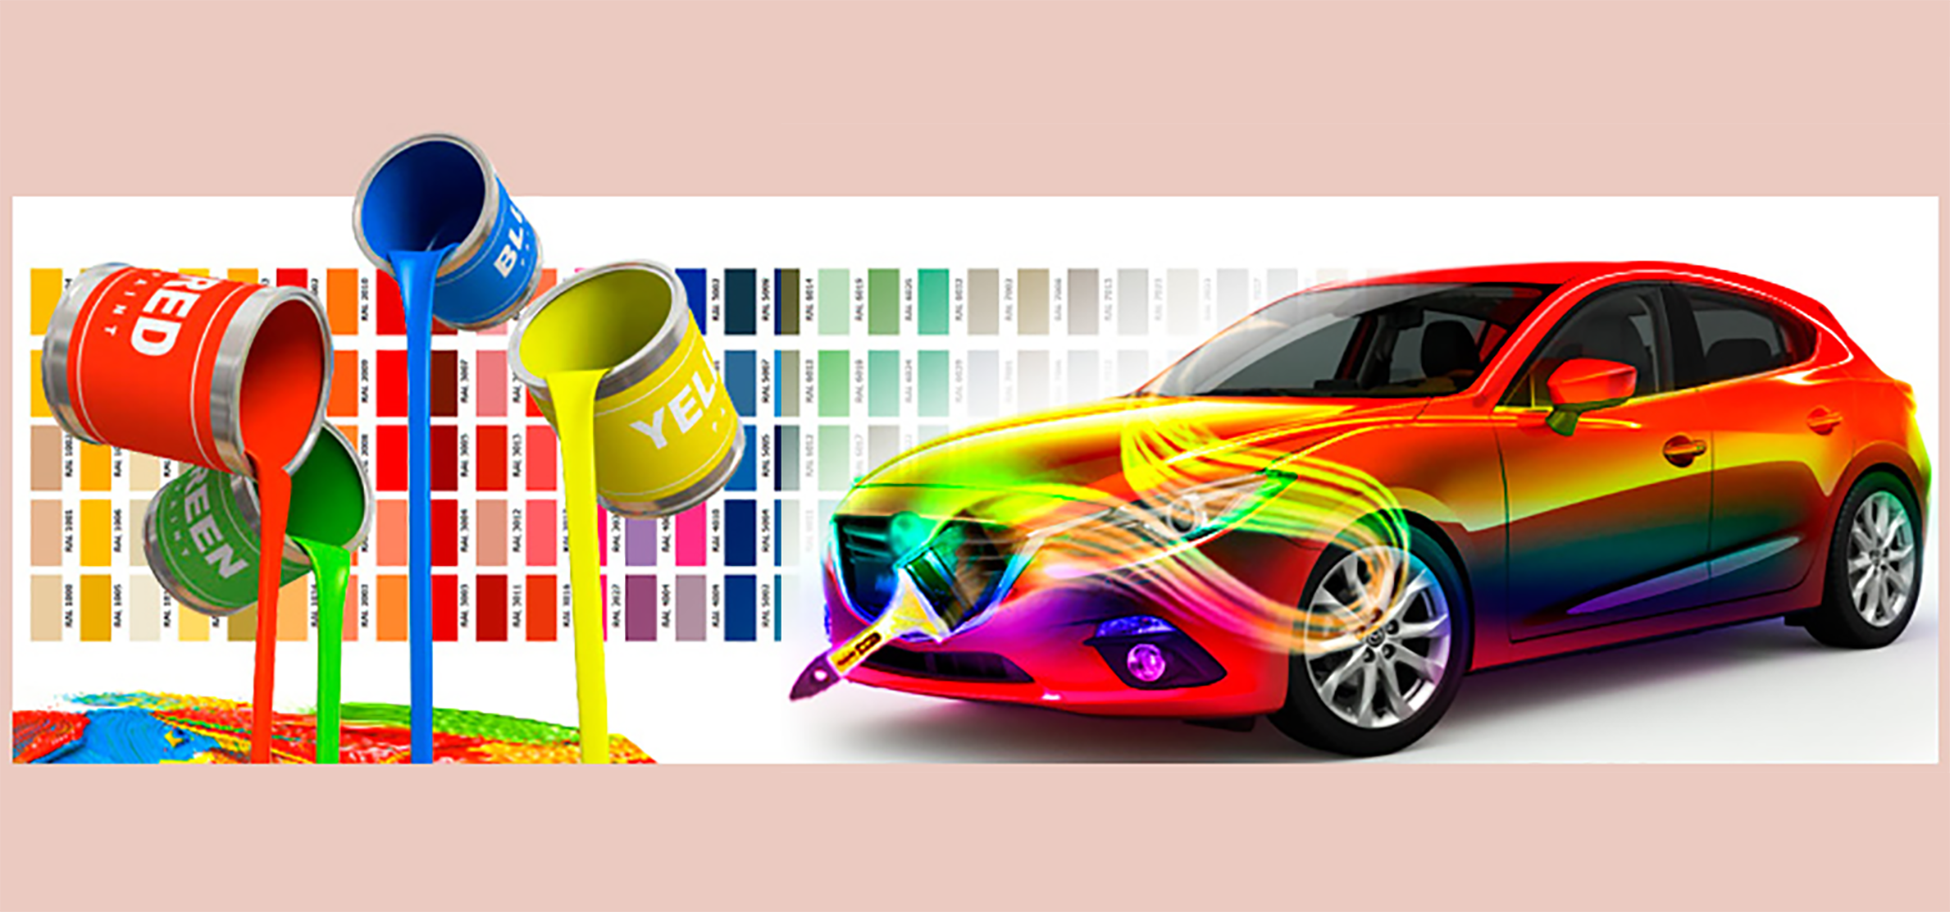 Подбор цвета для авто: Каталог автомобильных красок Toyota - ColorFactory